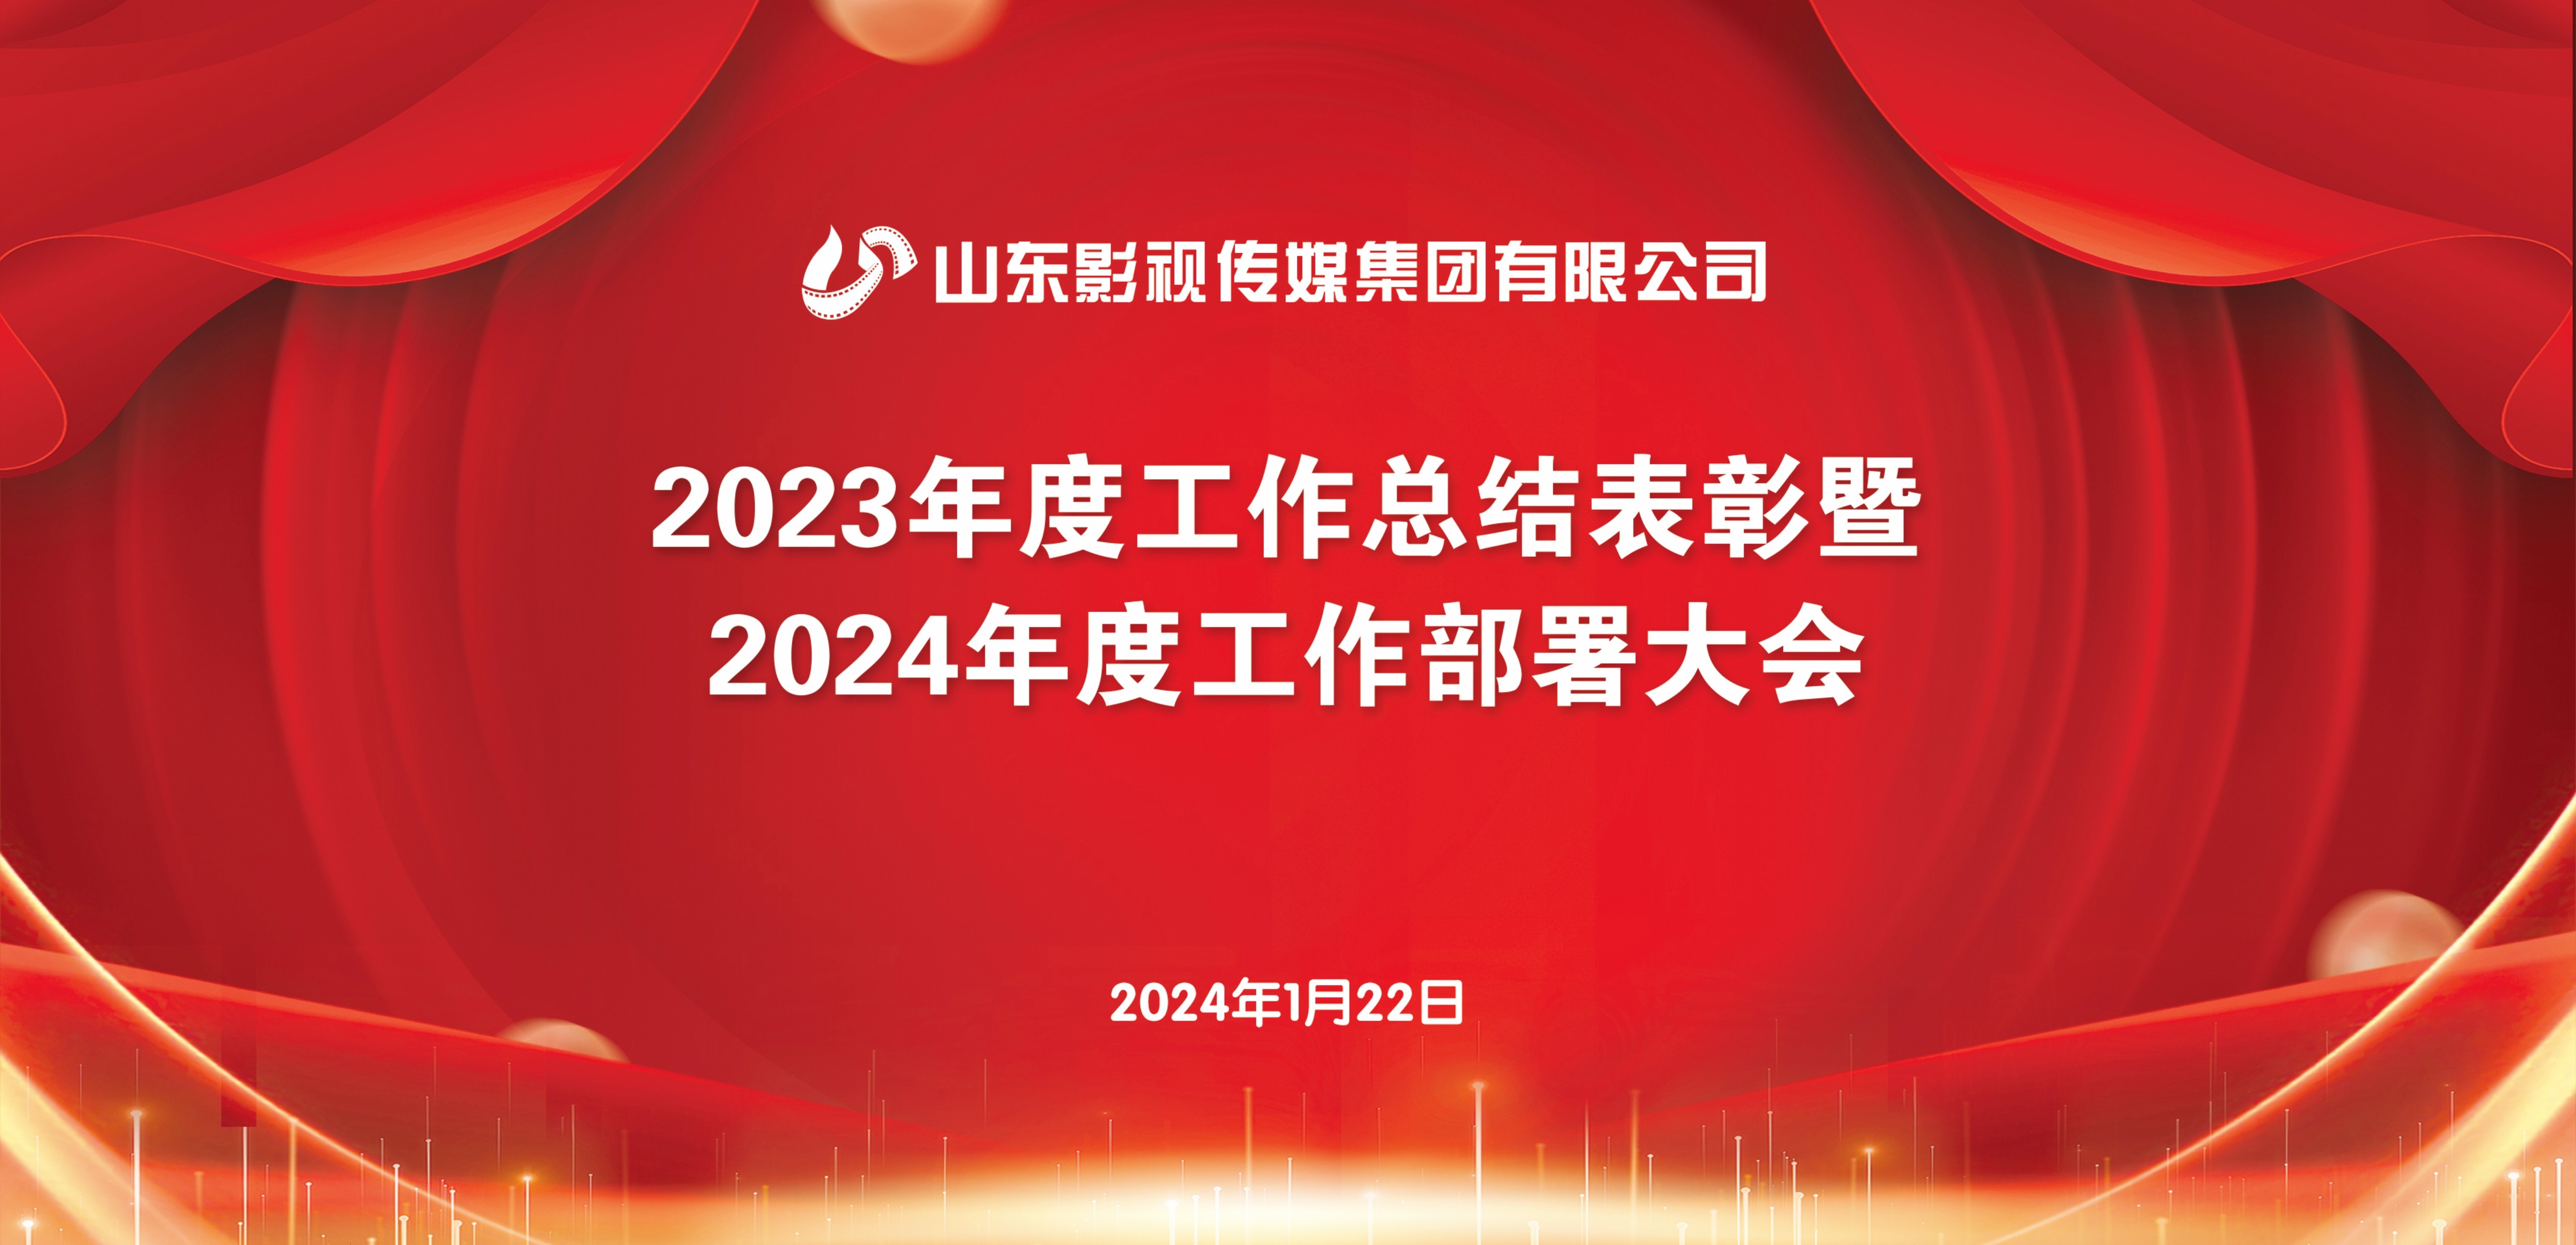 山东影视传媒集团召开2023年度工作总结表彰暨2024年度工作部署大会